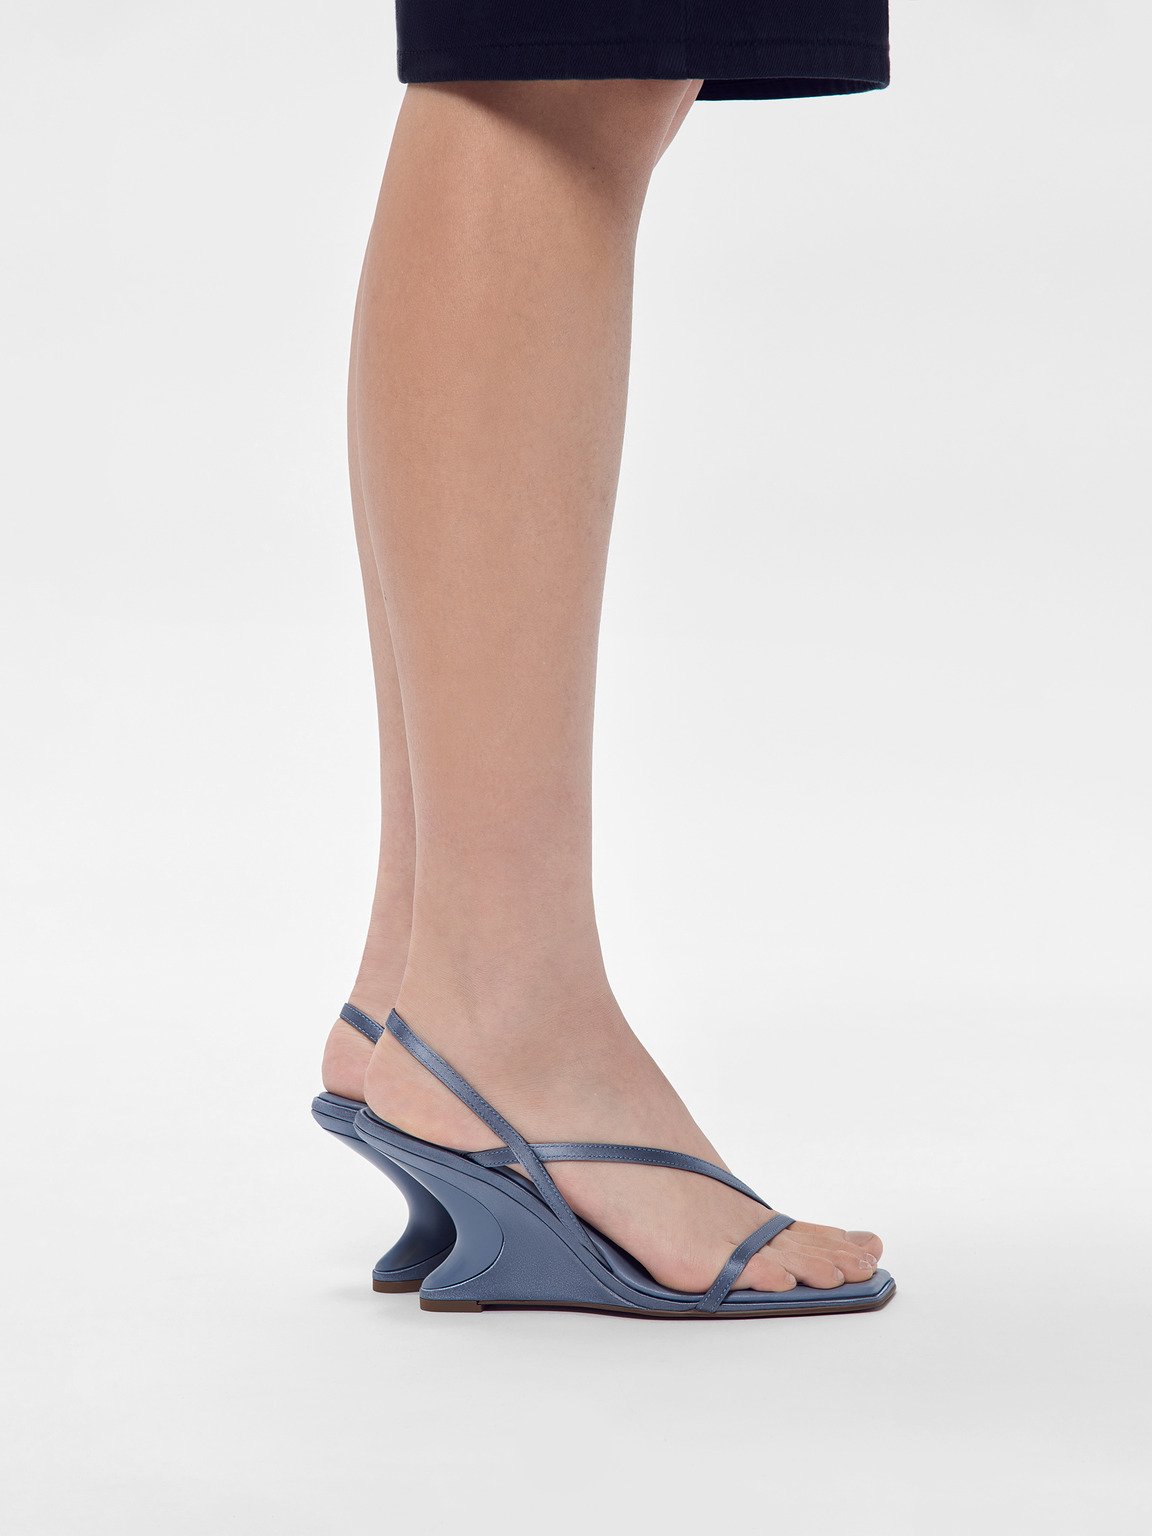 Oriana楔形涼鞋, 石蓝色